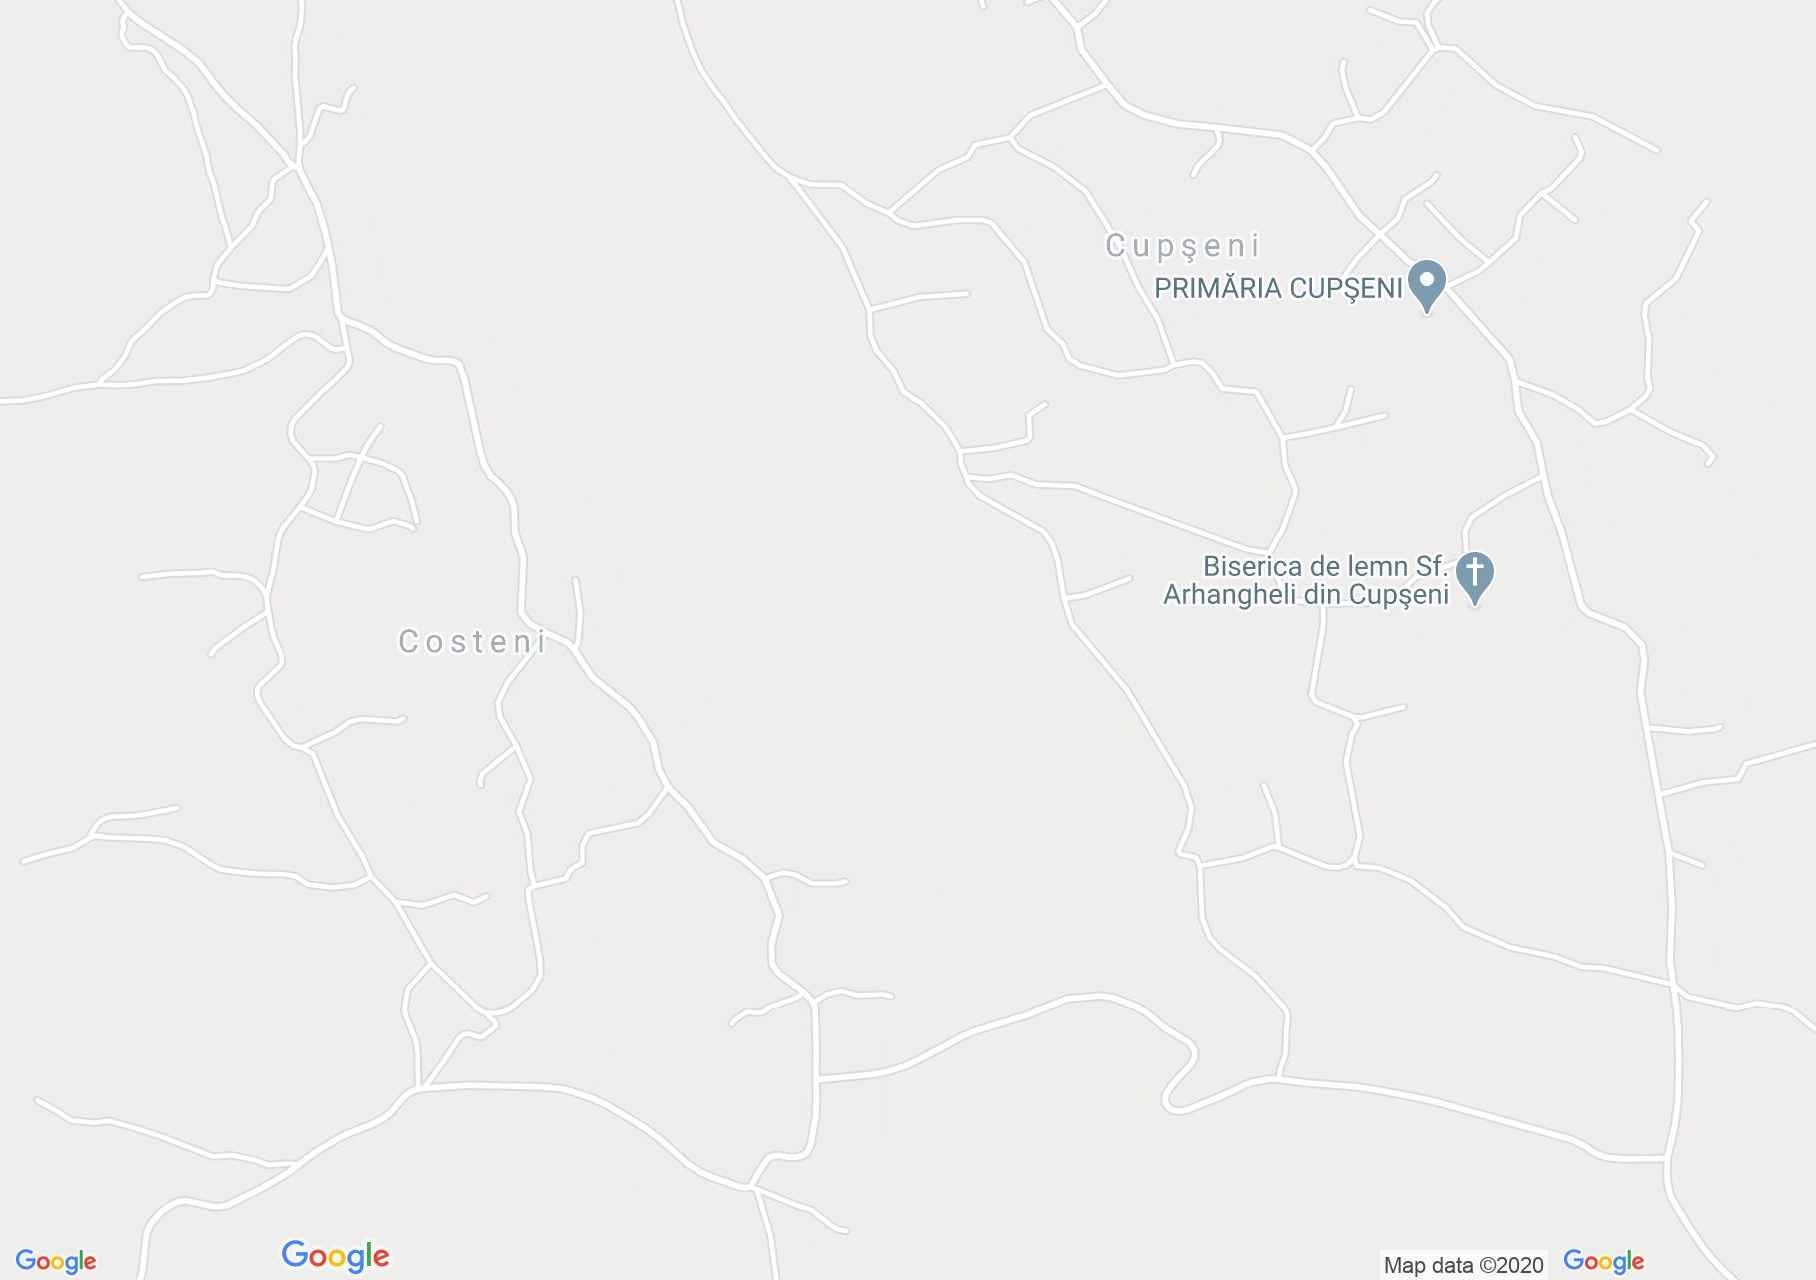 Costeni, Harta turistică interactivă